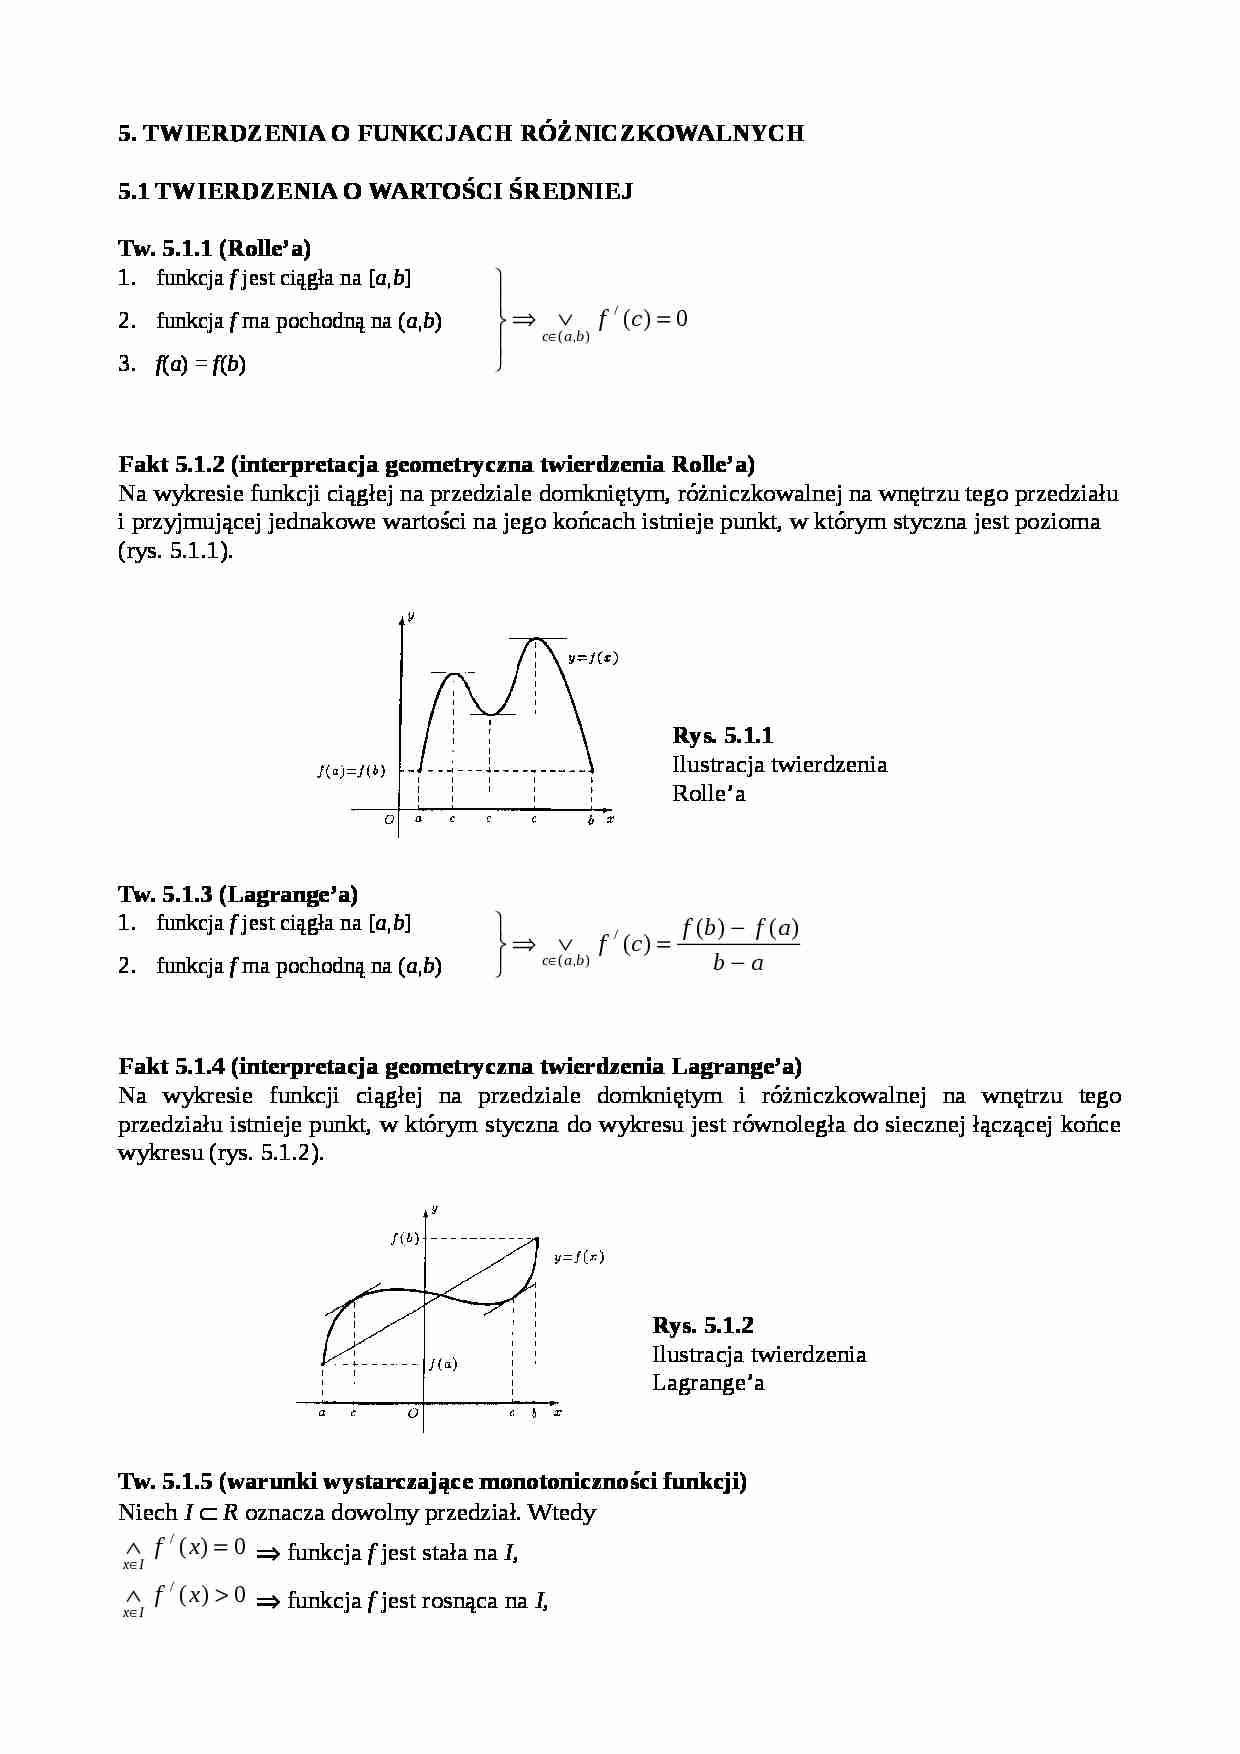 Twierdzenia o funkcjach różniczkowalnych - strona 1